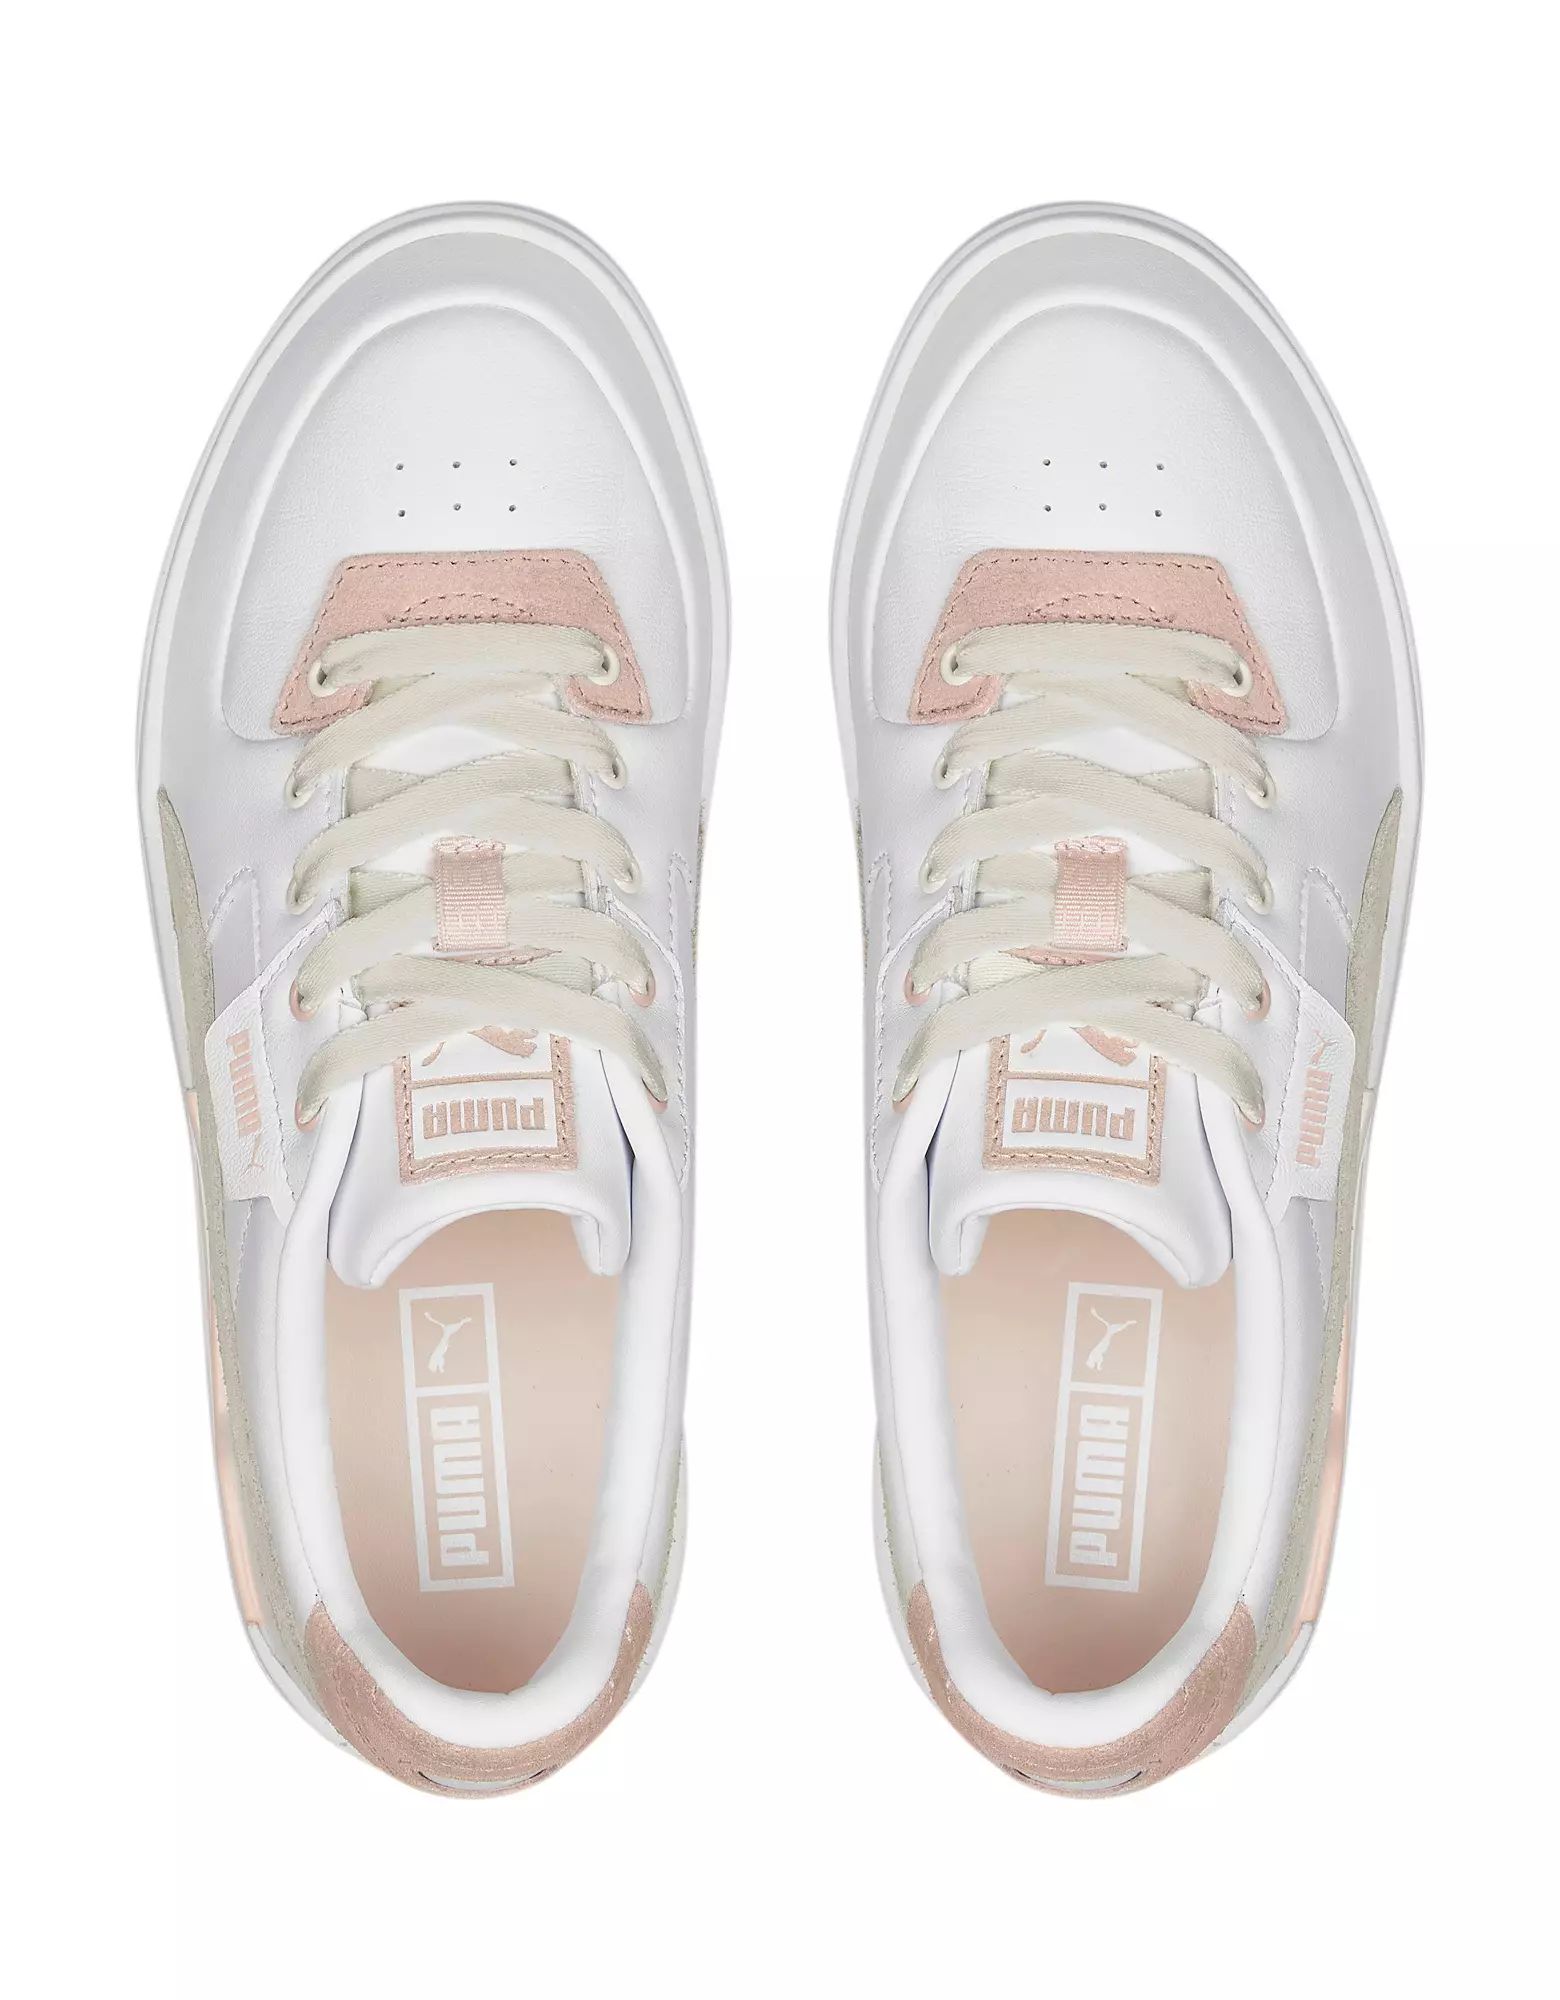 Puma Cali Dream color pop sneakers in white/pink | ASOS (Global)